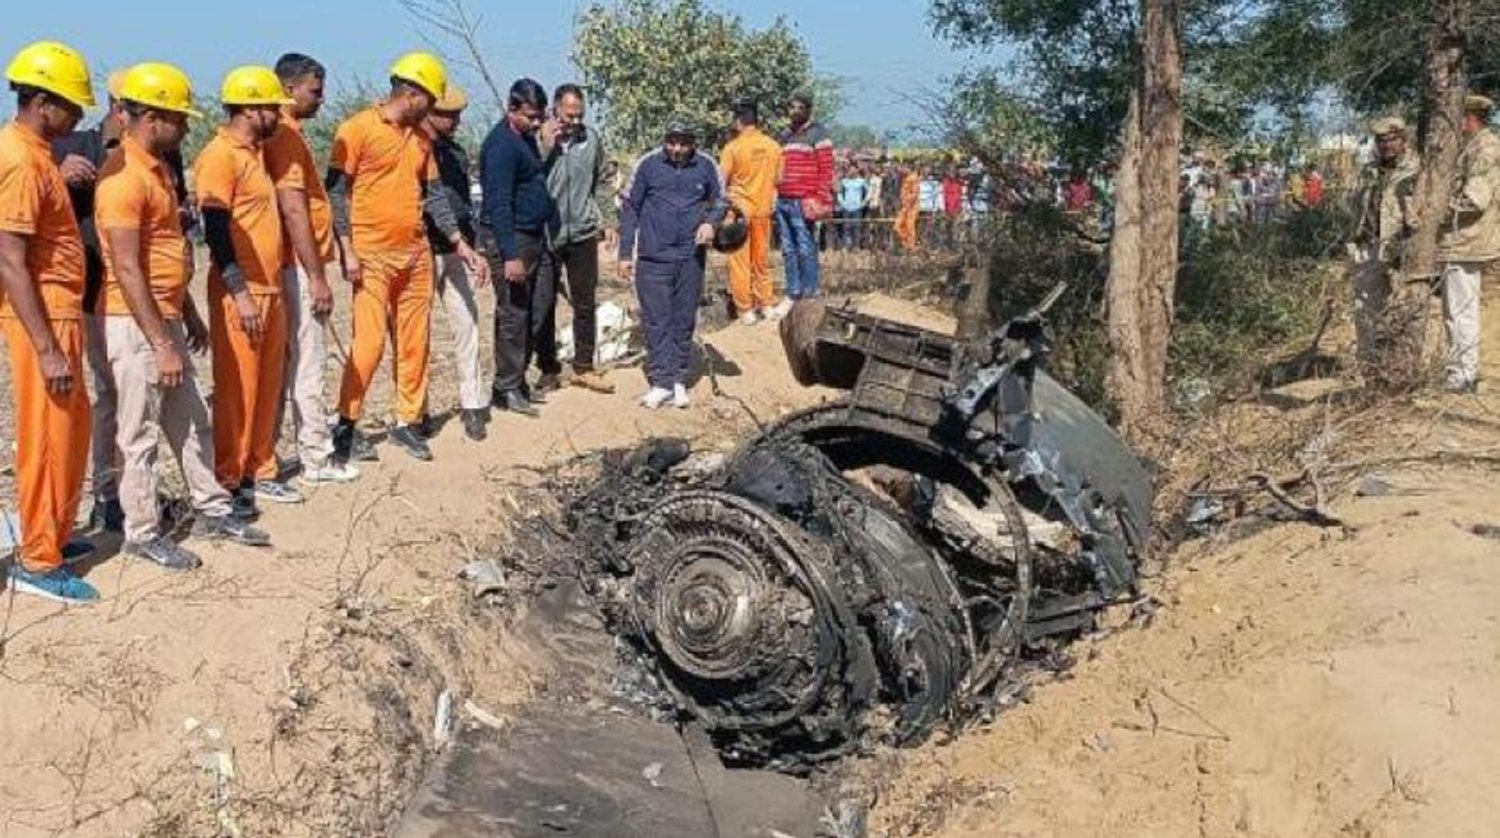 Yerel kurtarma yetkilileri ve askeri yetkililer, Rajasthan eyaletinde düşen uçağın enkazını inceliyor (AFP)
